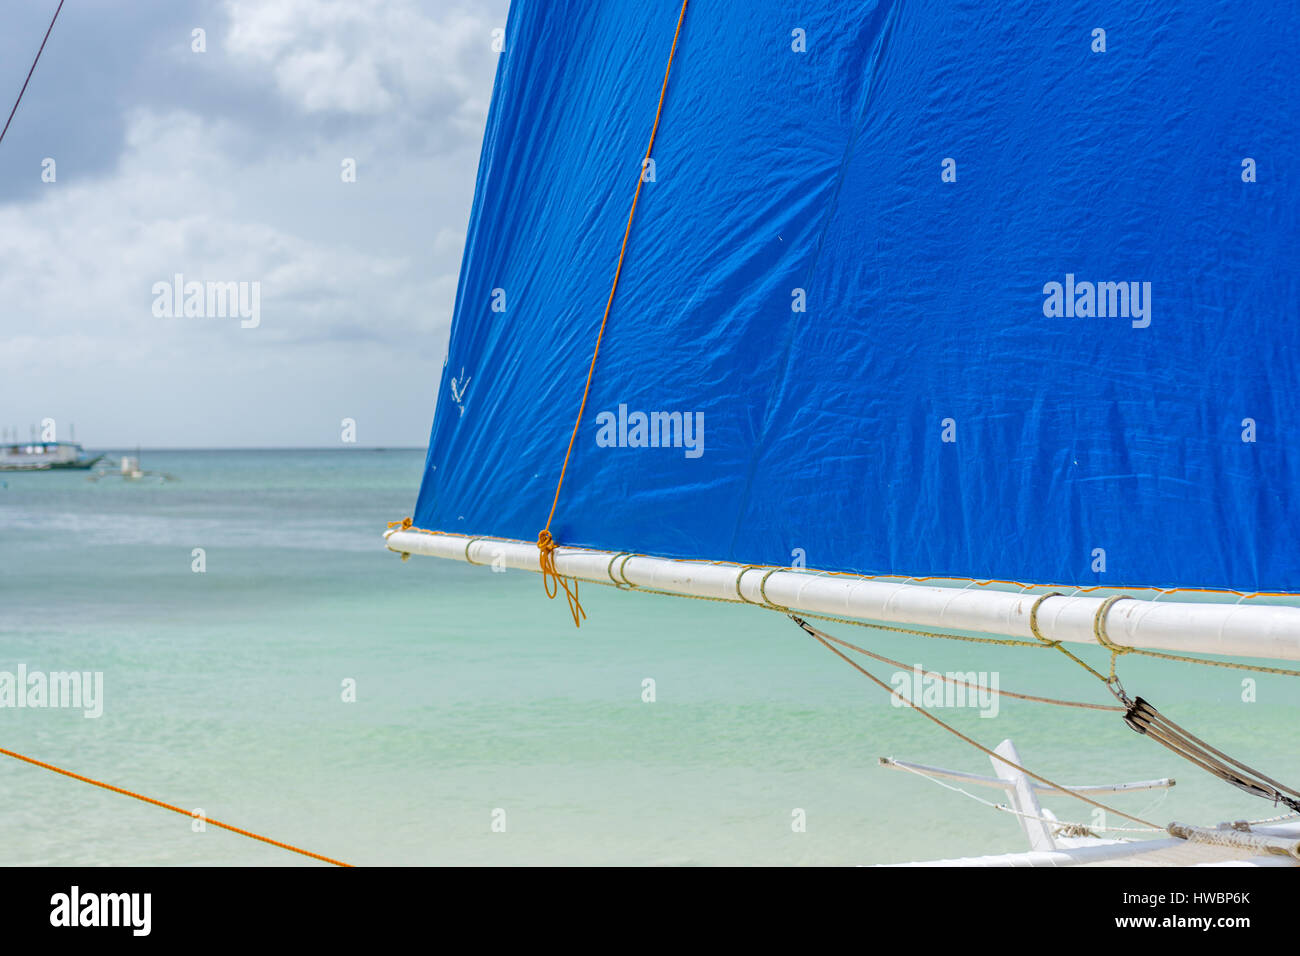 L'accent Premier plan d'un bateau à voile Philippines Philippines sur la plage donnant sur une mer calme avec des bateaux de la pompe à l'arrière du terrain. Banque D'Images